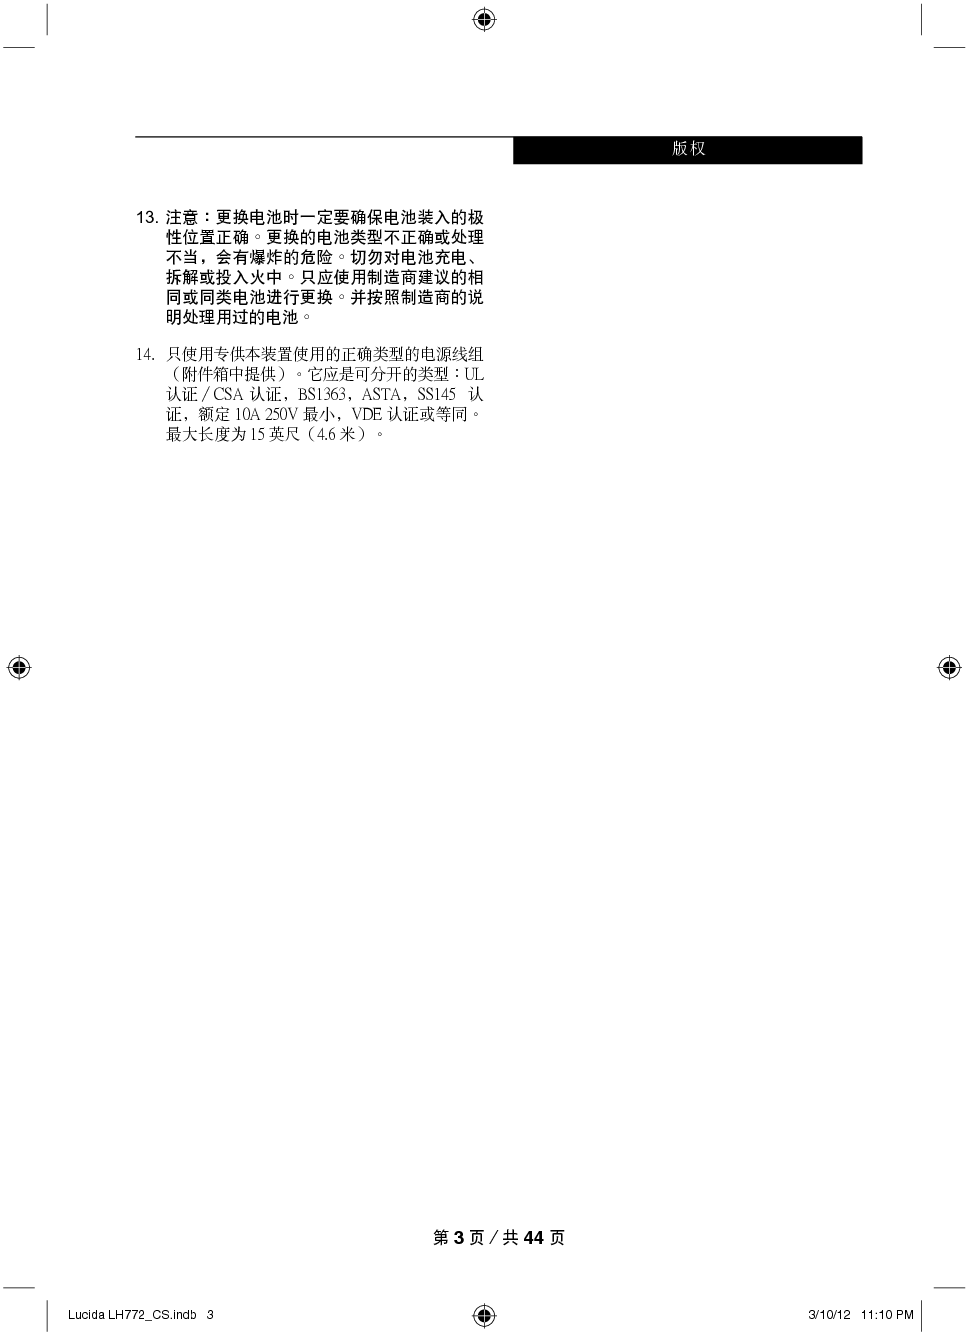 富士通 Fujitsu LifeBook LH772 Windows 7 使用说明书 第2页